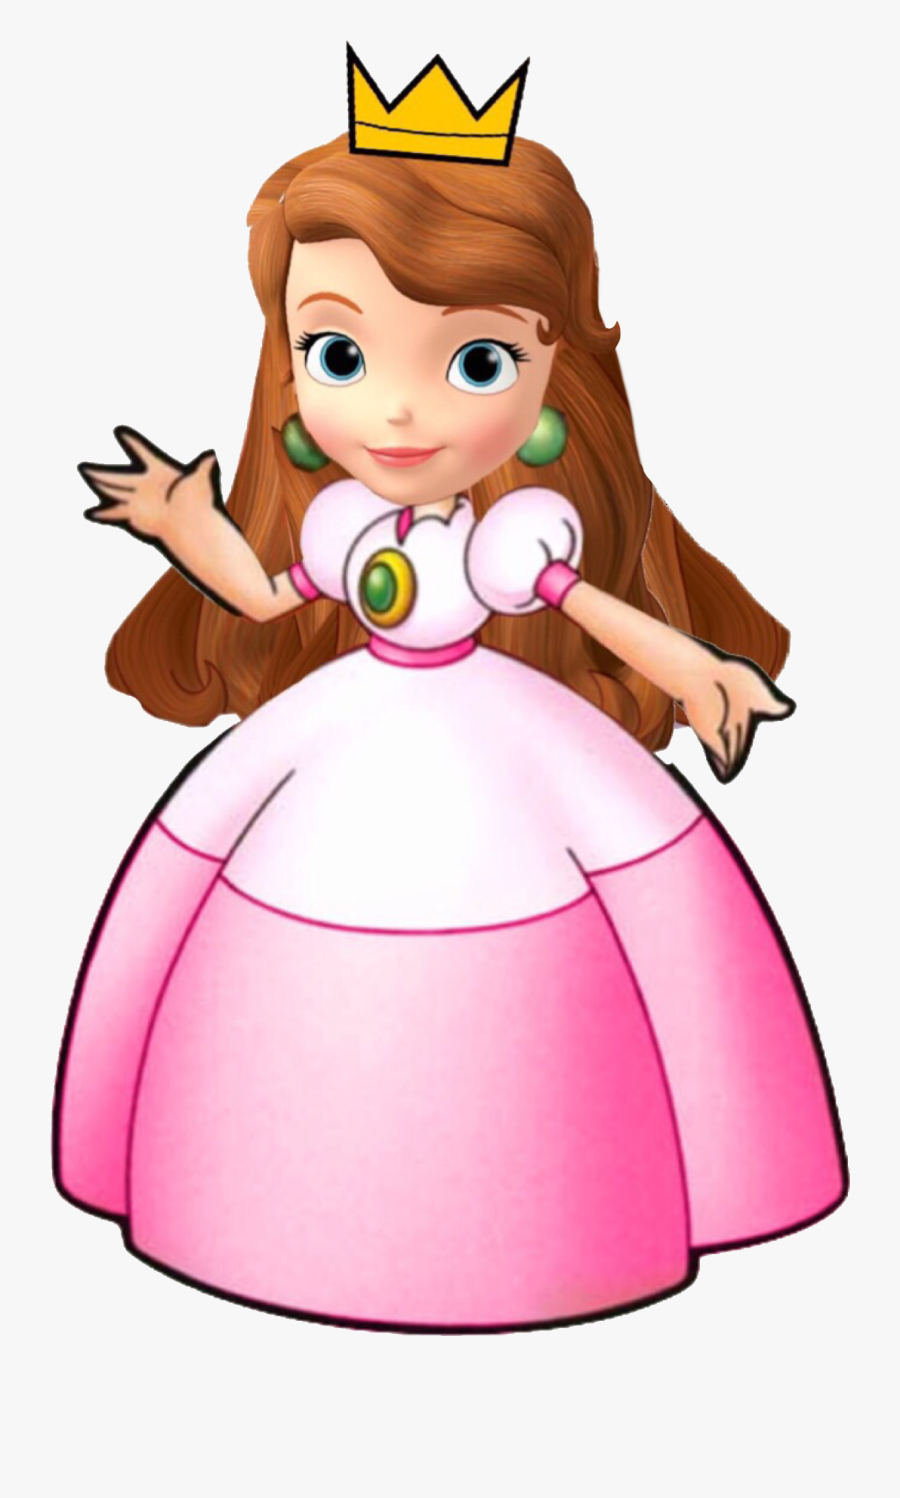 Sofia As Princess Peach - Princess Peach Dic, Transparent Clipart